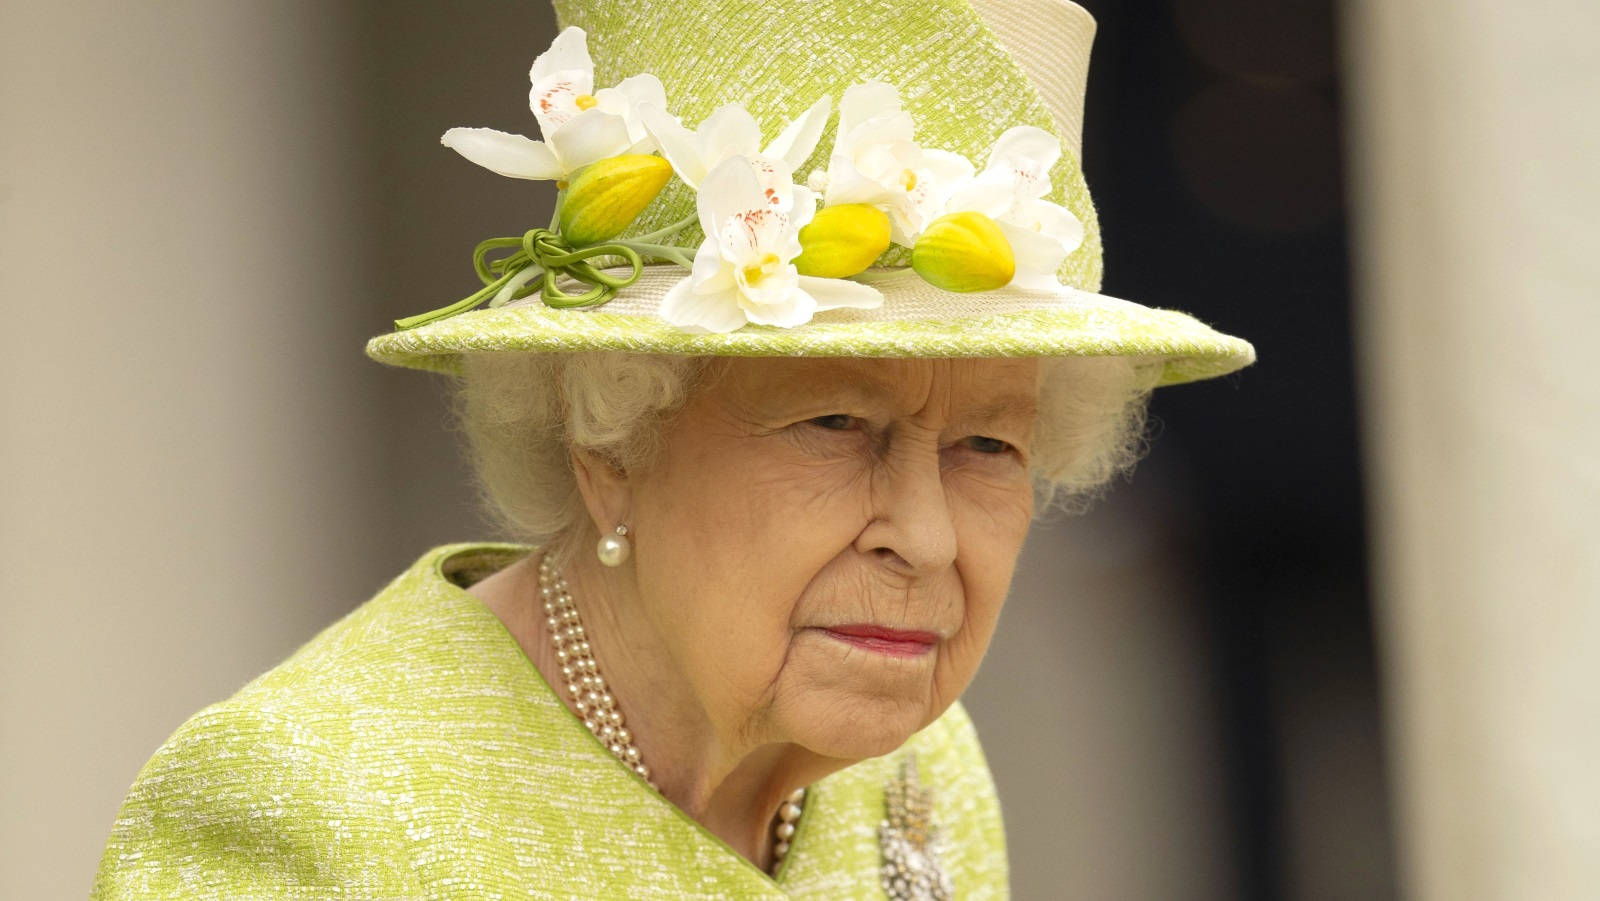 <p><strong>Кралица Елизабет II - Телец</strong></p>

<p>Кралица Елизабет II не трябваше да бъде кралица, но нейният звезден знак беше много подходящ за да поеме този дълг именно тя. За телците се казва, че са практични и надеждни, точно както нейно величество. Никой не е по-сдържан от английската кралица, но от време на време прави по някой пиперлив коментар.</p>